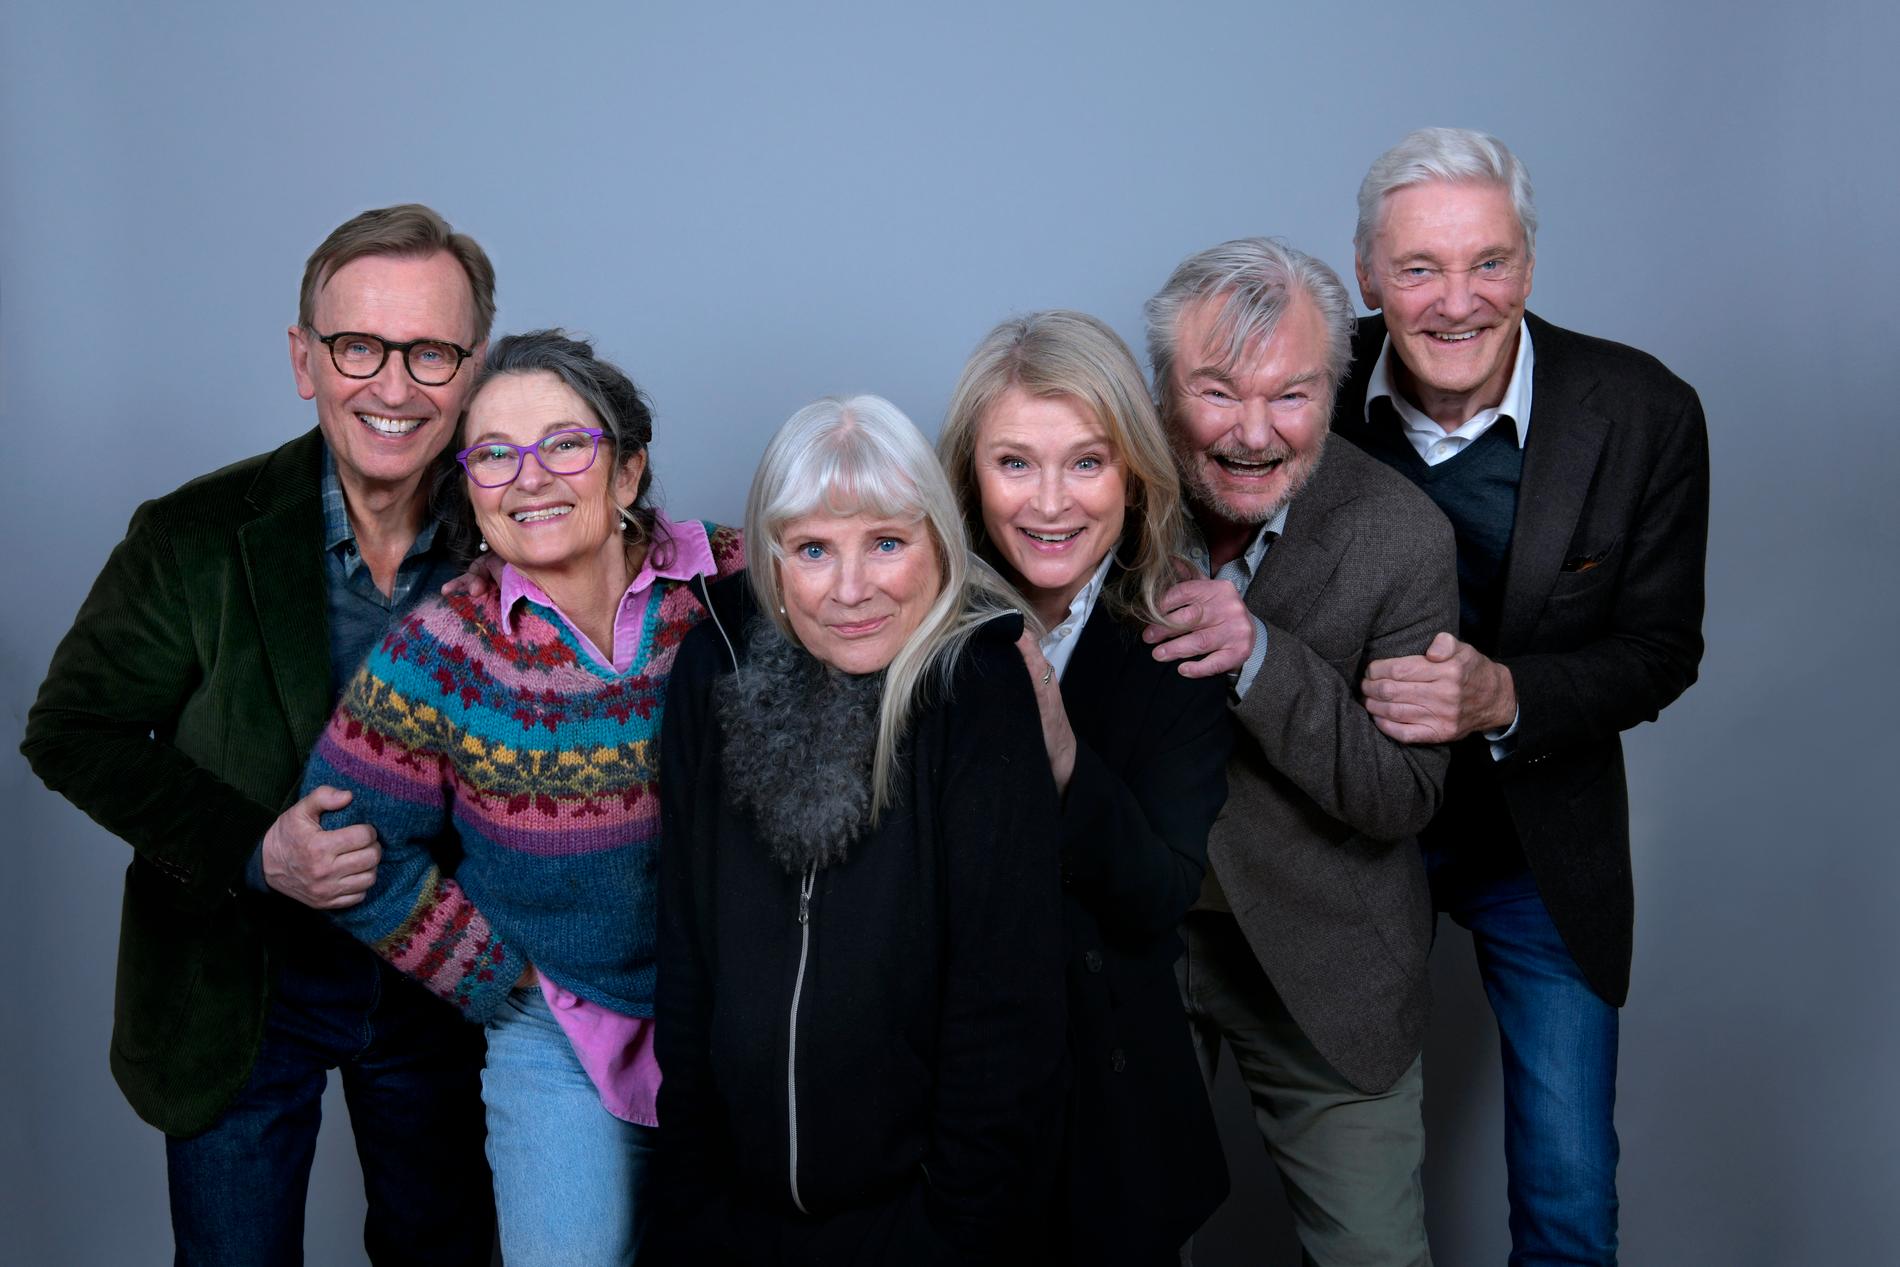 Lorrygänget med Johan Ulveson, Suzanne Reuter, Ulla Skoog, Lena Endre, Peter Dalle och Claes Månsson gör comeback i jul.